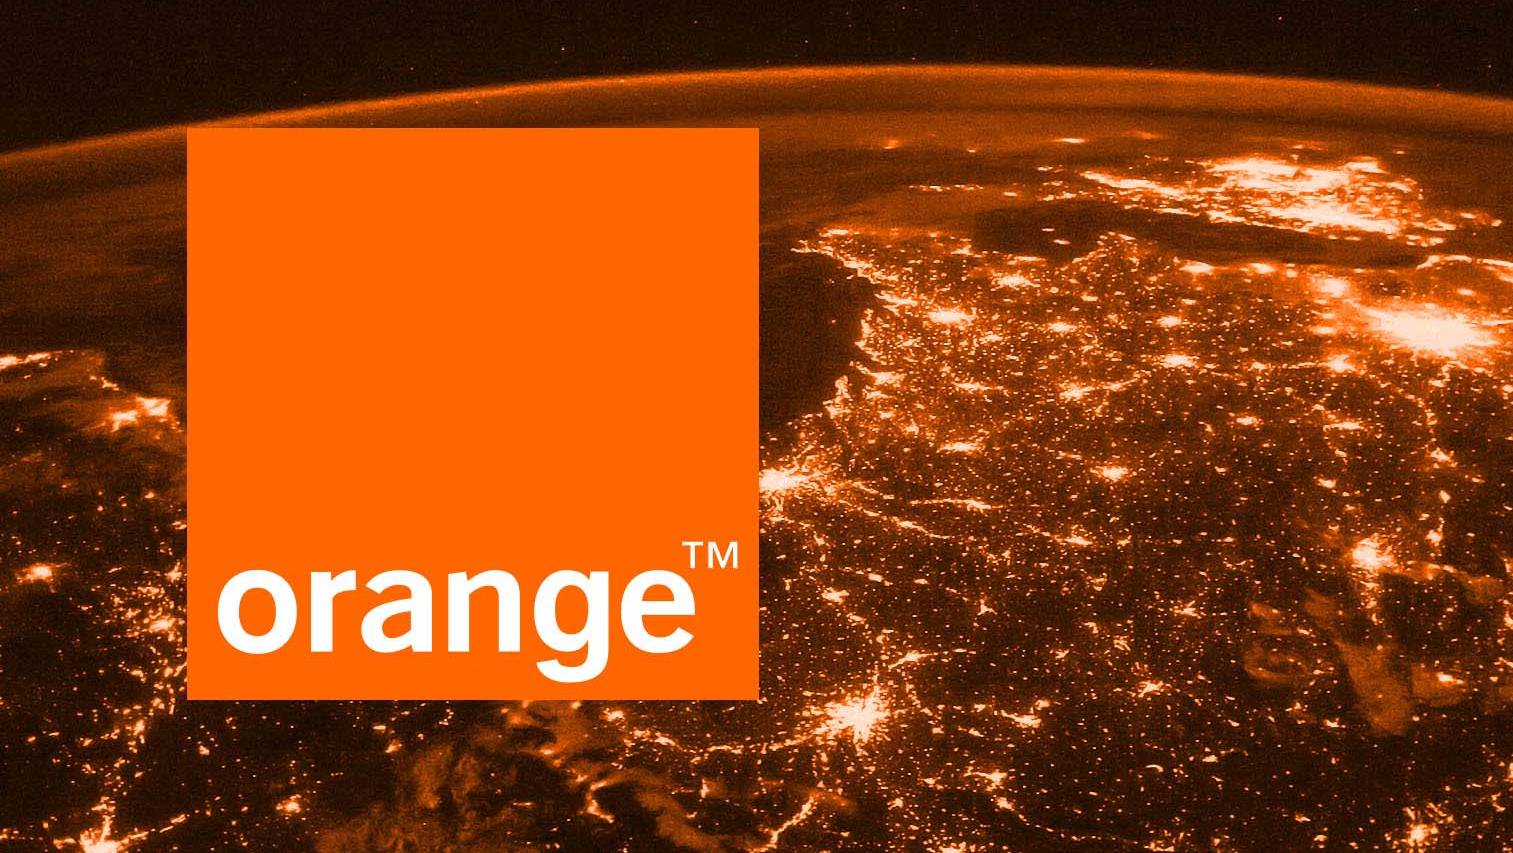 Les GRANDES offres qu'Orange propose en Roumanie pour les téléphones Azi!